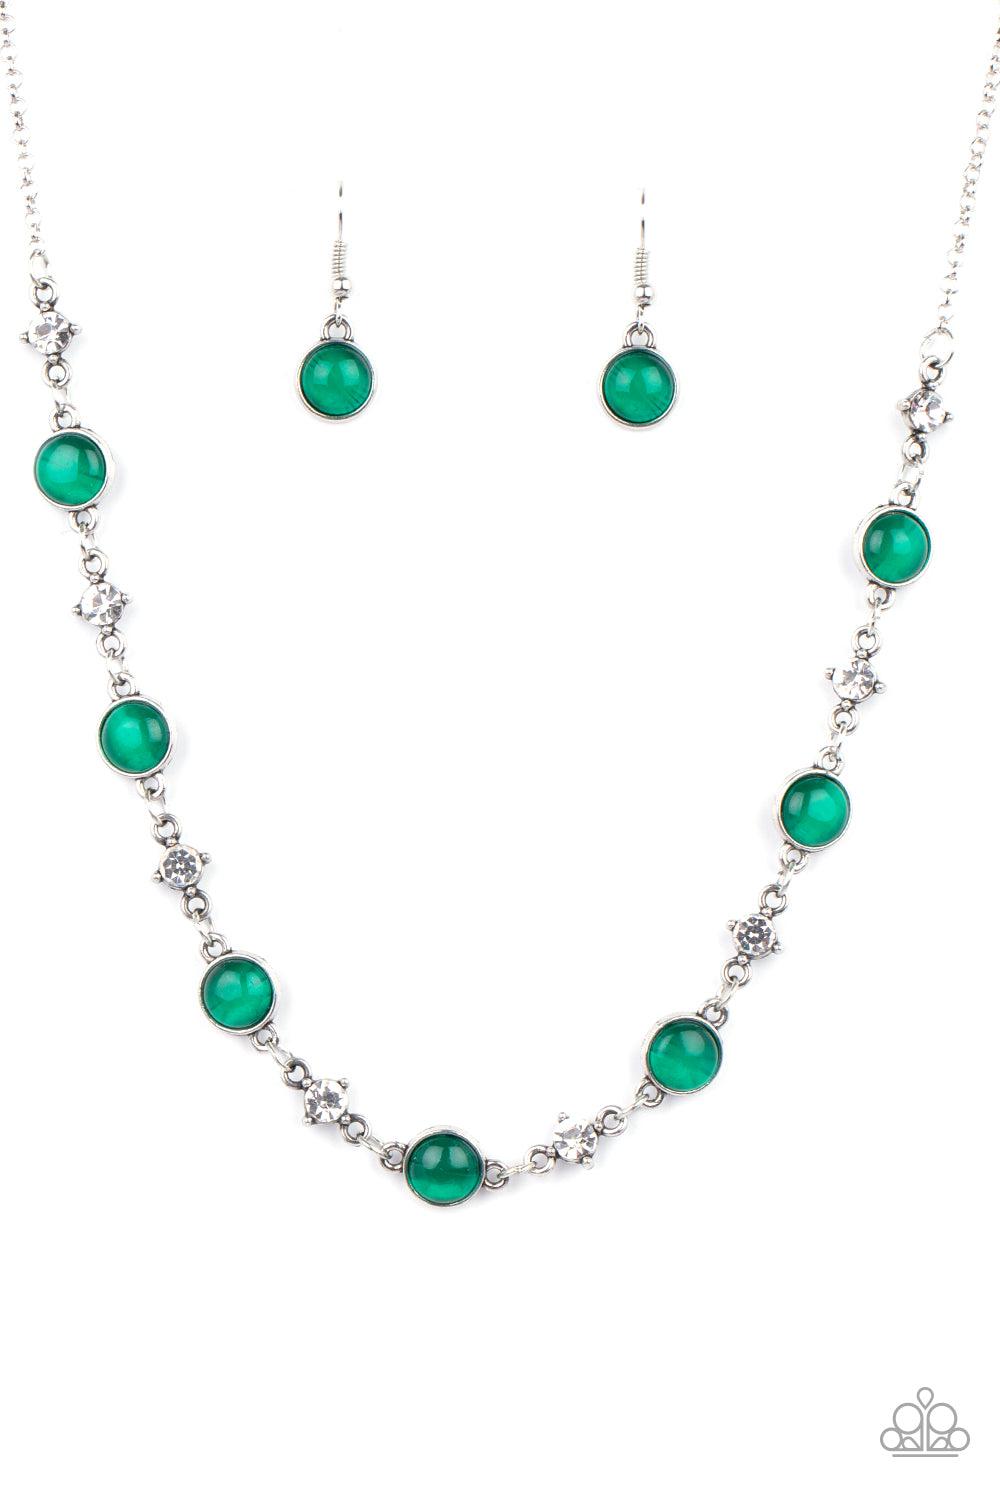 green-necklace-16-941020x-p2re-grxx-223yn